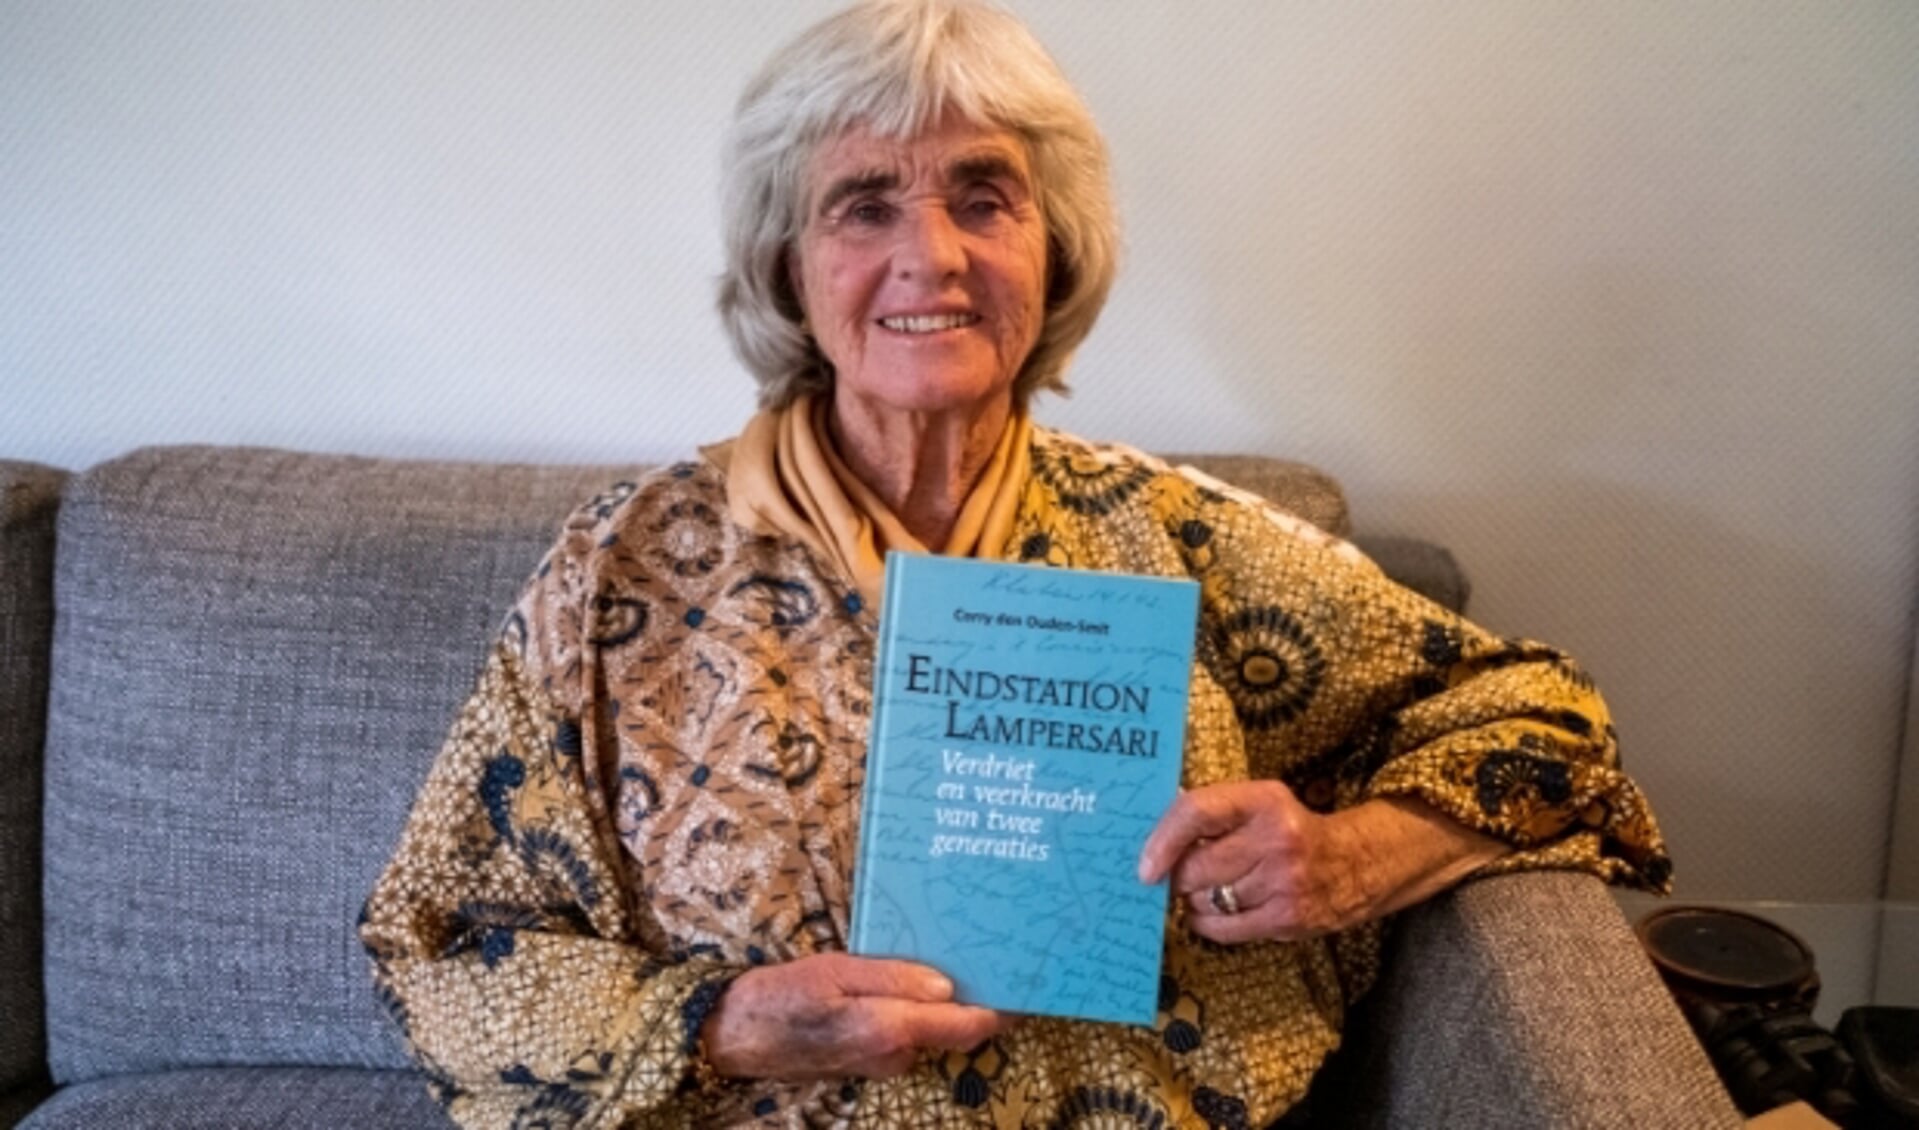 Corry den Ouden-Smit met haar boek 'Eindstation Lampersari' dat in de boekhandel van Bilthoven te koop is